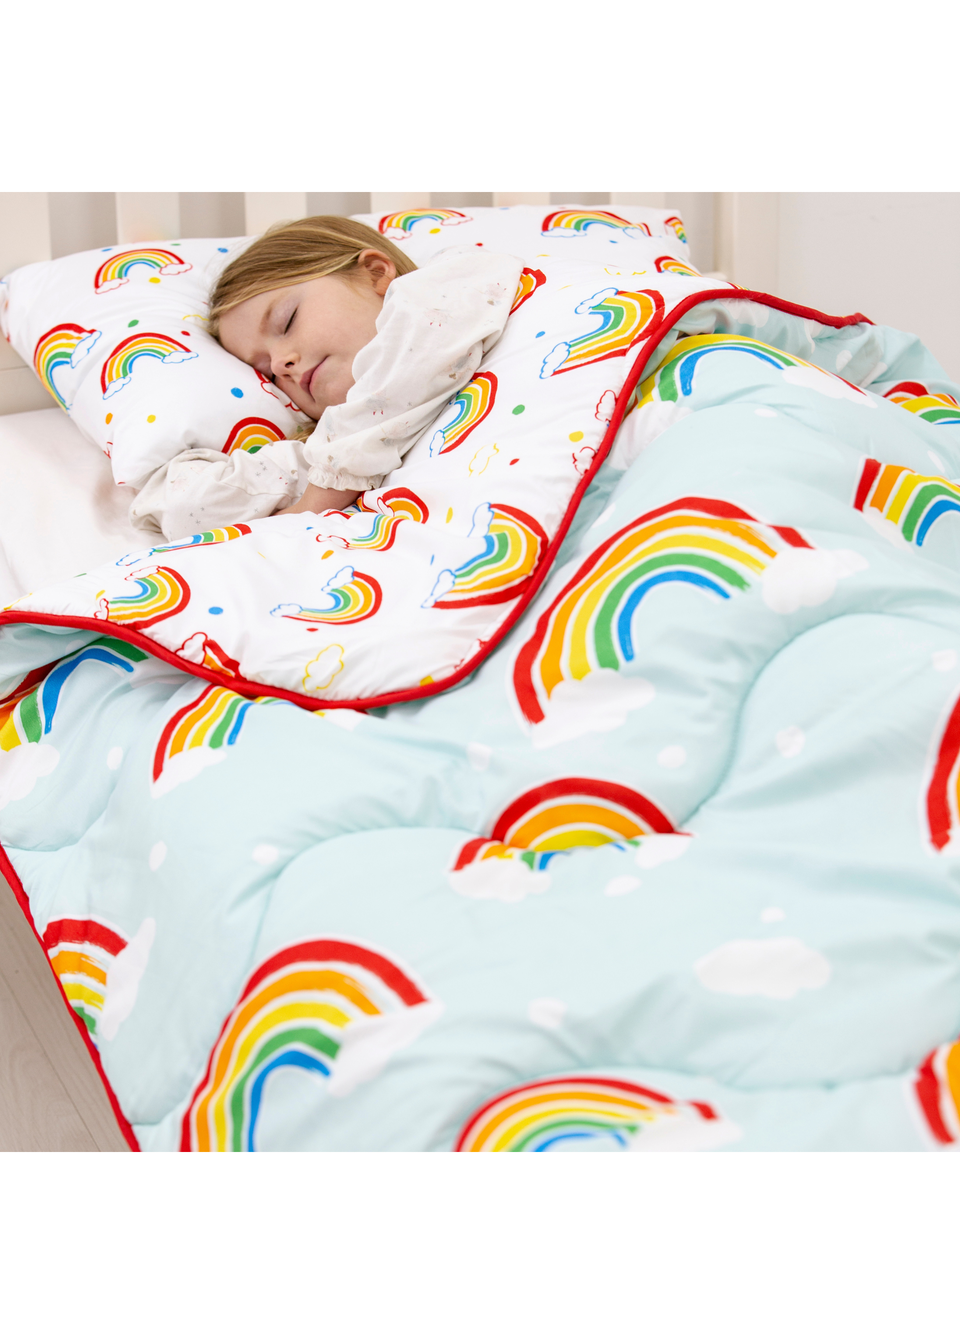 Rest Easy Sleep Better Rainbow Coverless Duvet Set (4.5 Tog)